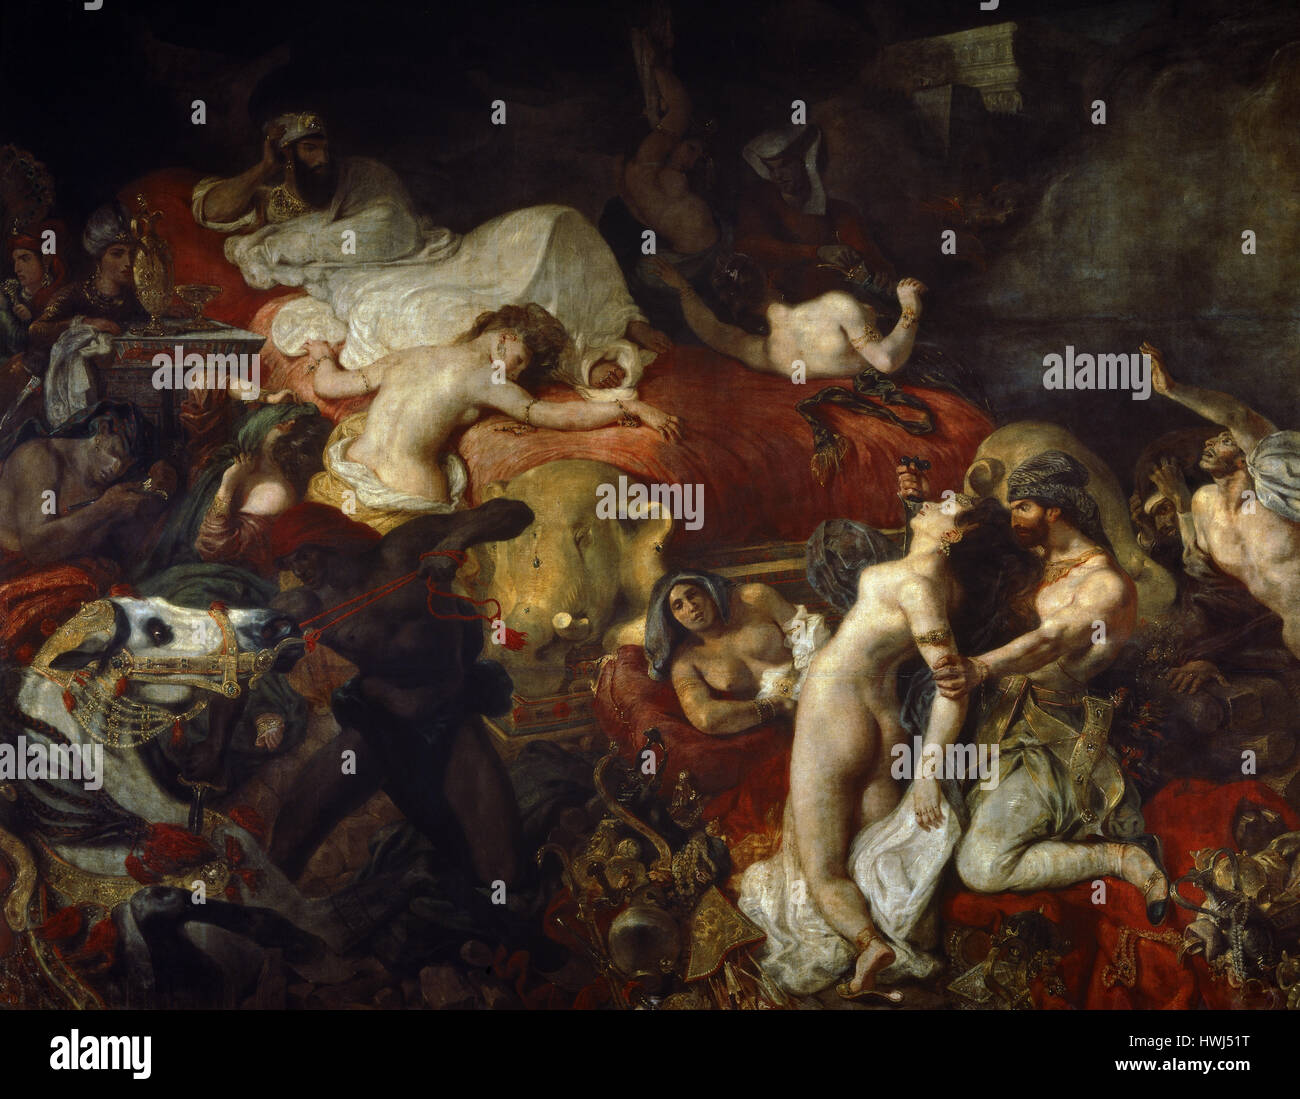 Eugene Delacroix (1798 - 1863). Il francese artista romantico. La morte di Sardanapalus, 1827. Olio su tela. Il museo del Louvre. Parigi. La Francia. Foto Stock